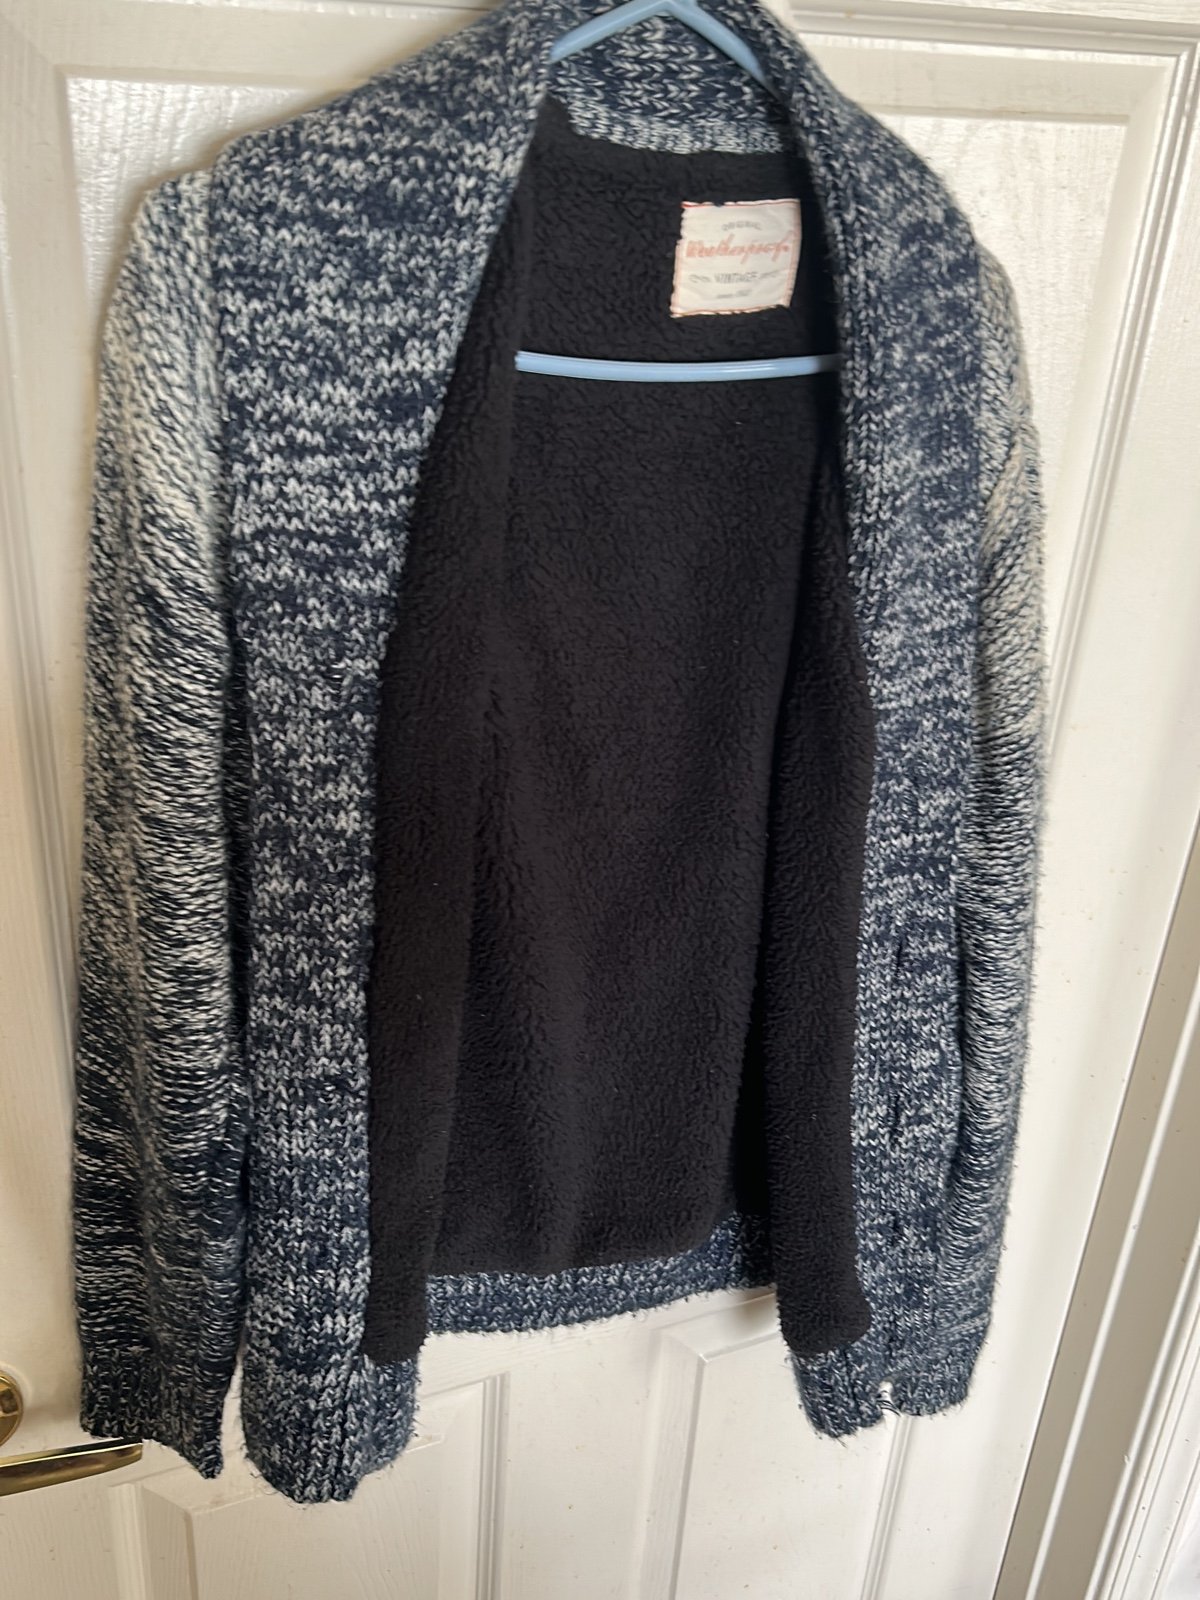 Knitted sweater Cardigan E7sHB5jdx